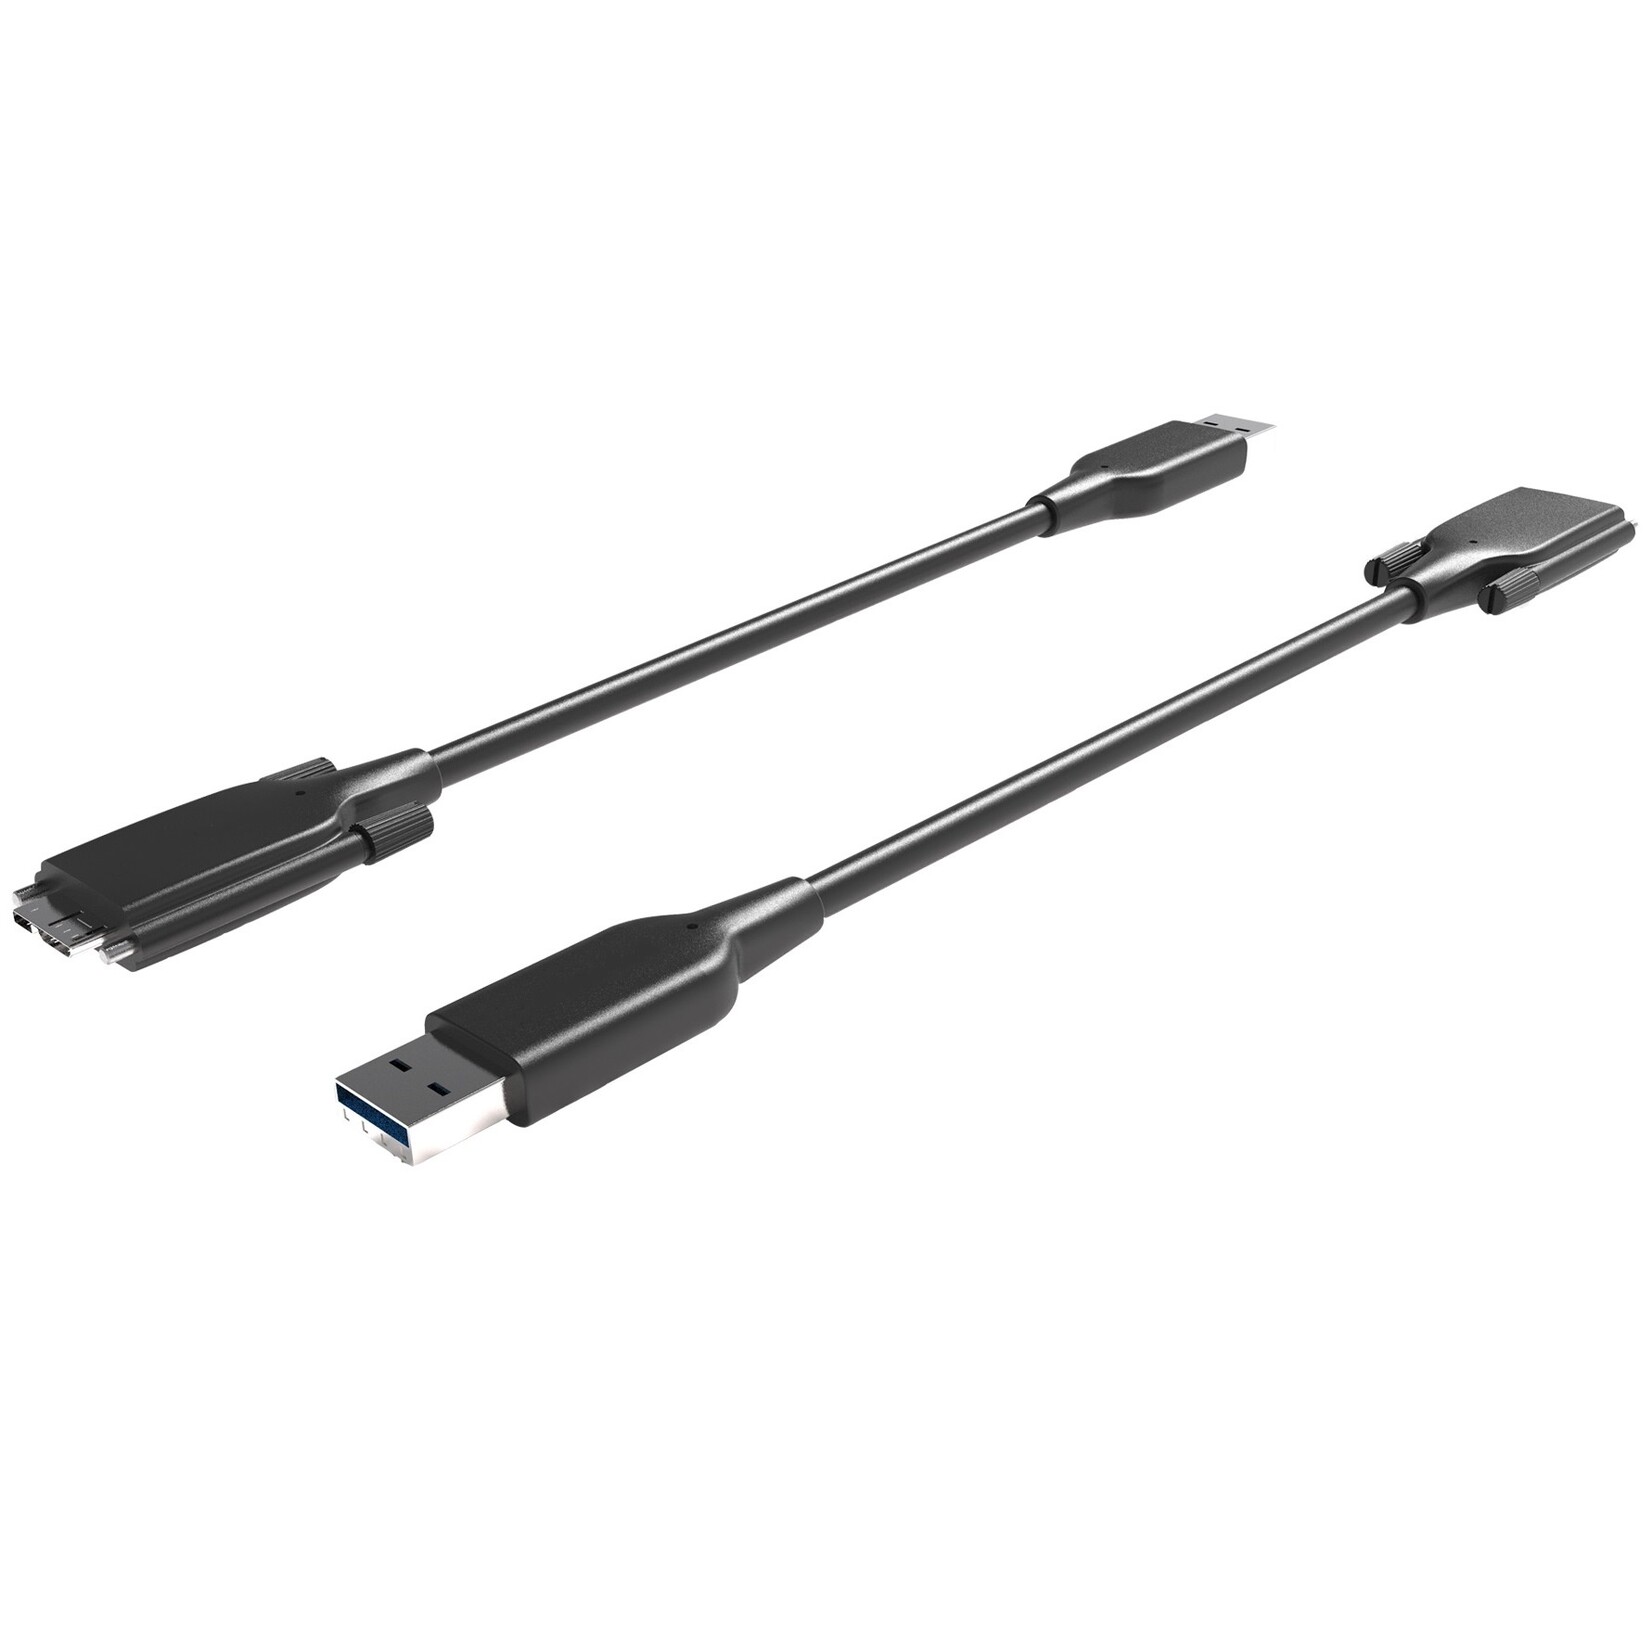 Le câble de données et d'alimentation flexible pour les caméras USB 3.0 avec connecteur Micro B